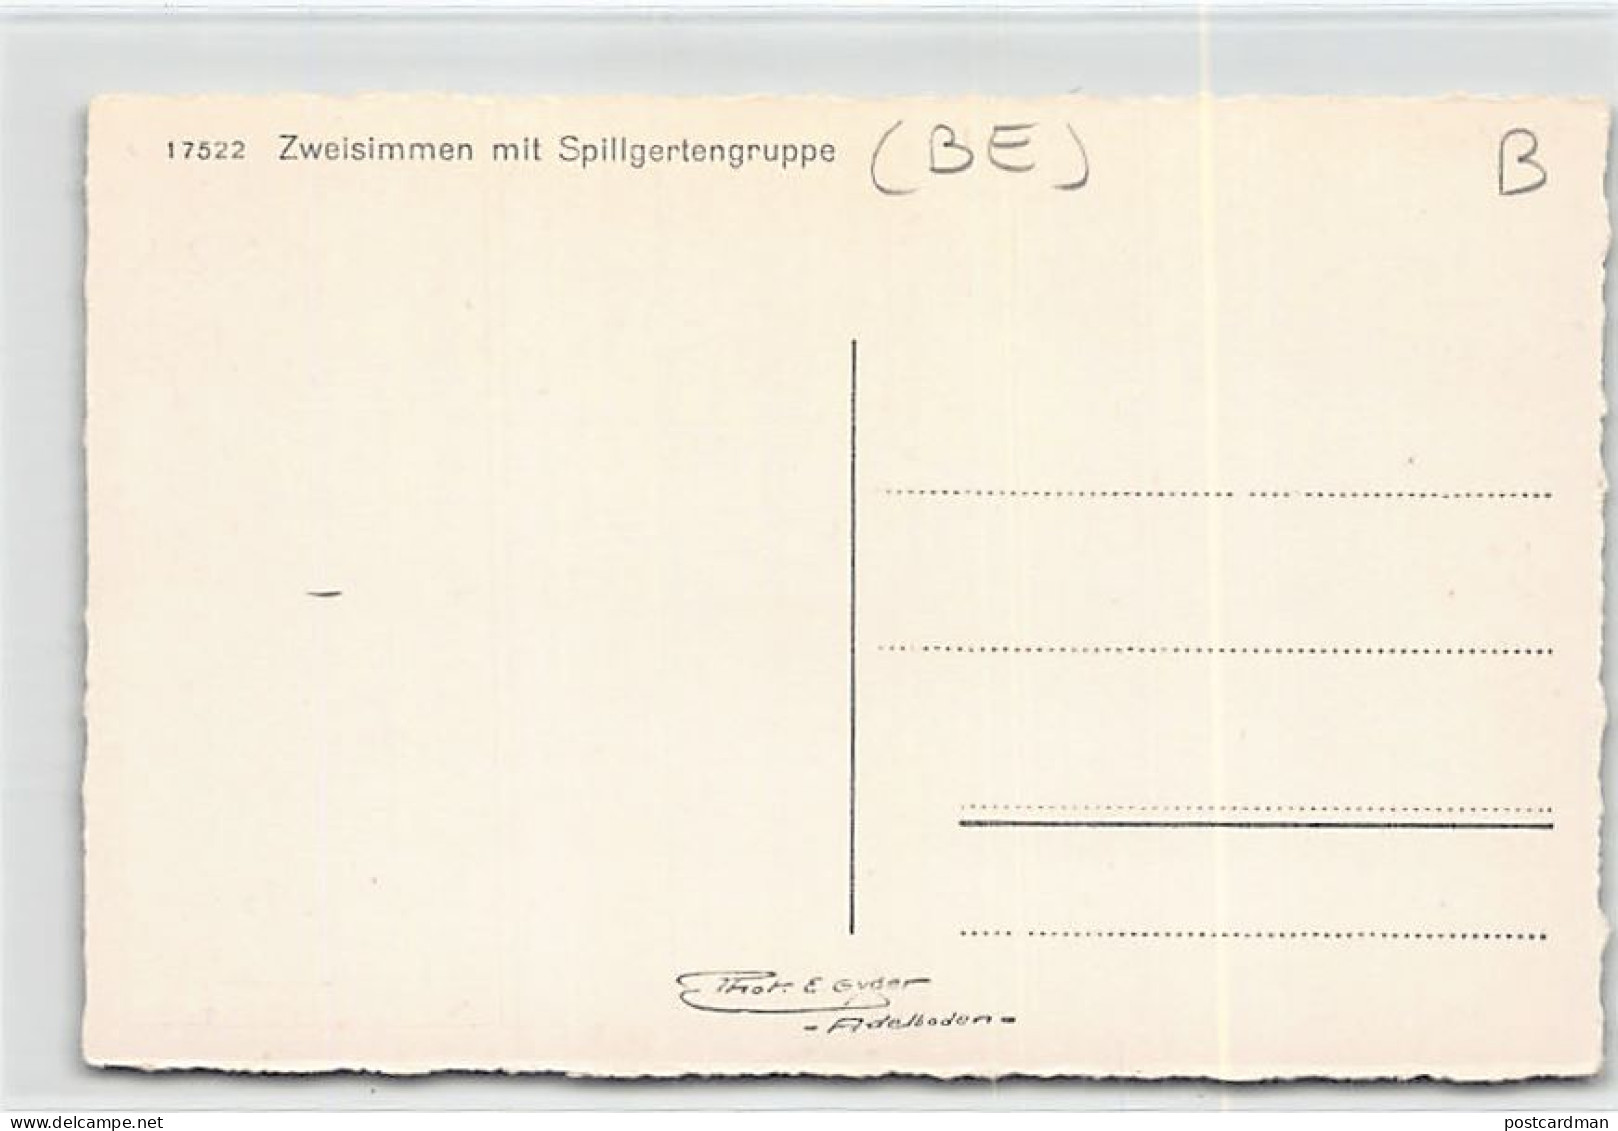 ZWEISIMMEN (BE) Spillgertengruppe - Verlag Gyger 17522 - Zweisimmen